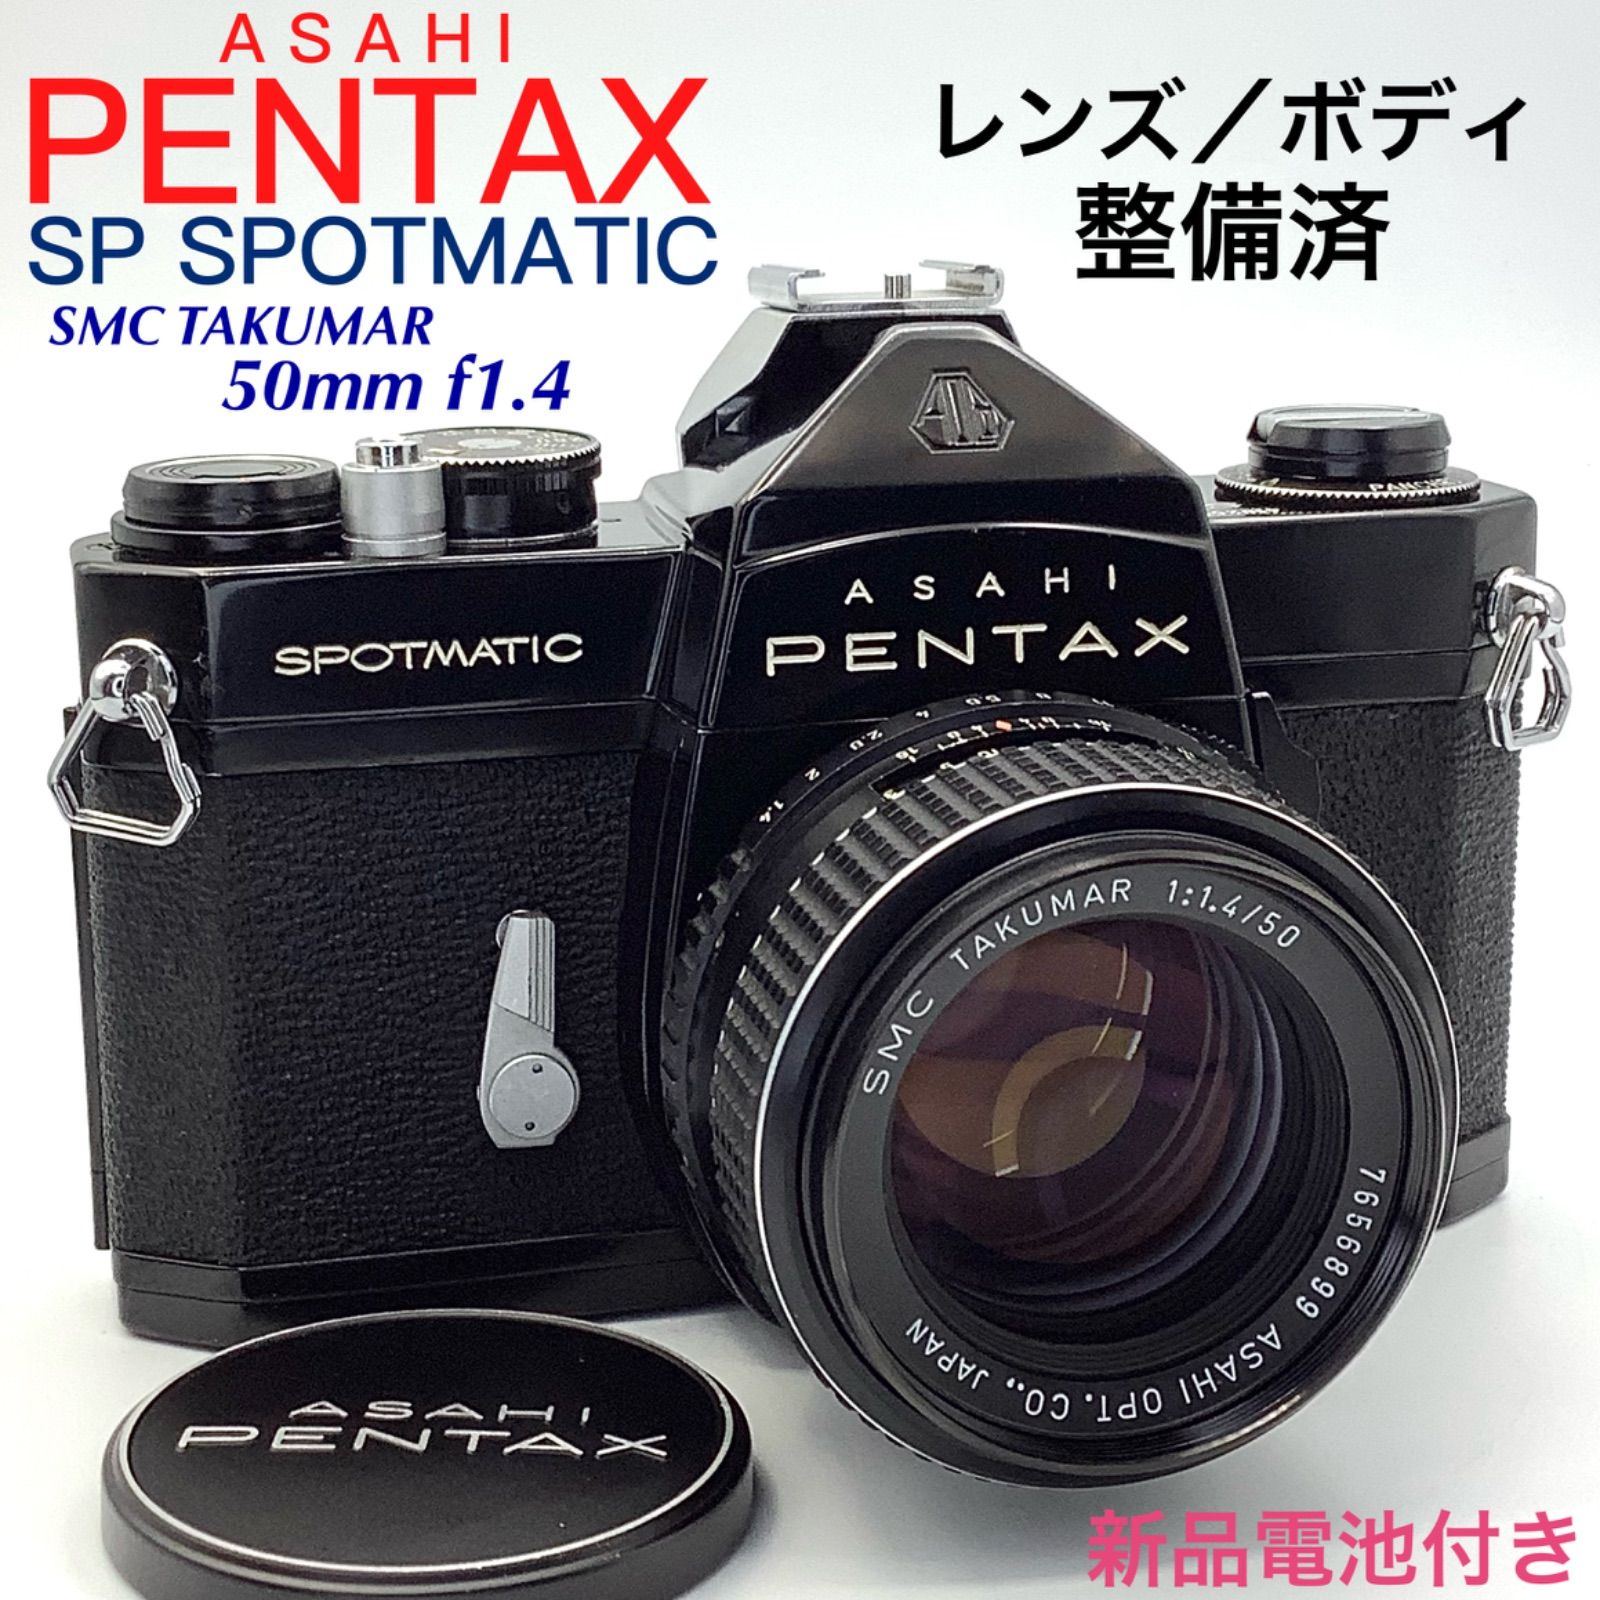 アサヒペンタックス SP SPOTMATIC／TAKUMAR 50mm f1.4 - カメラの